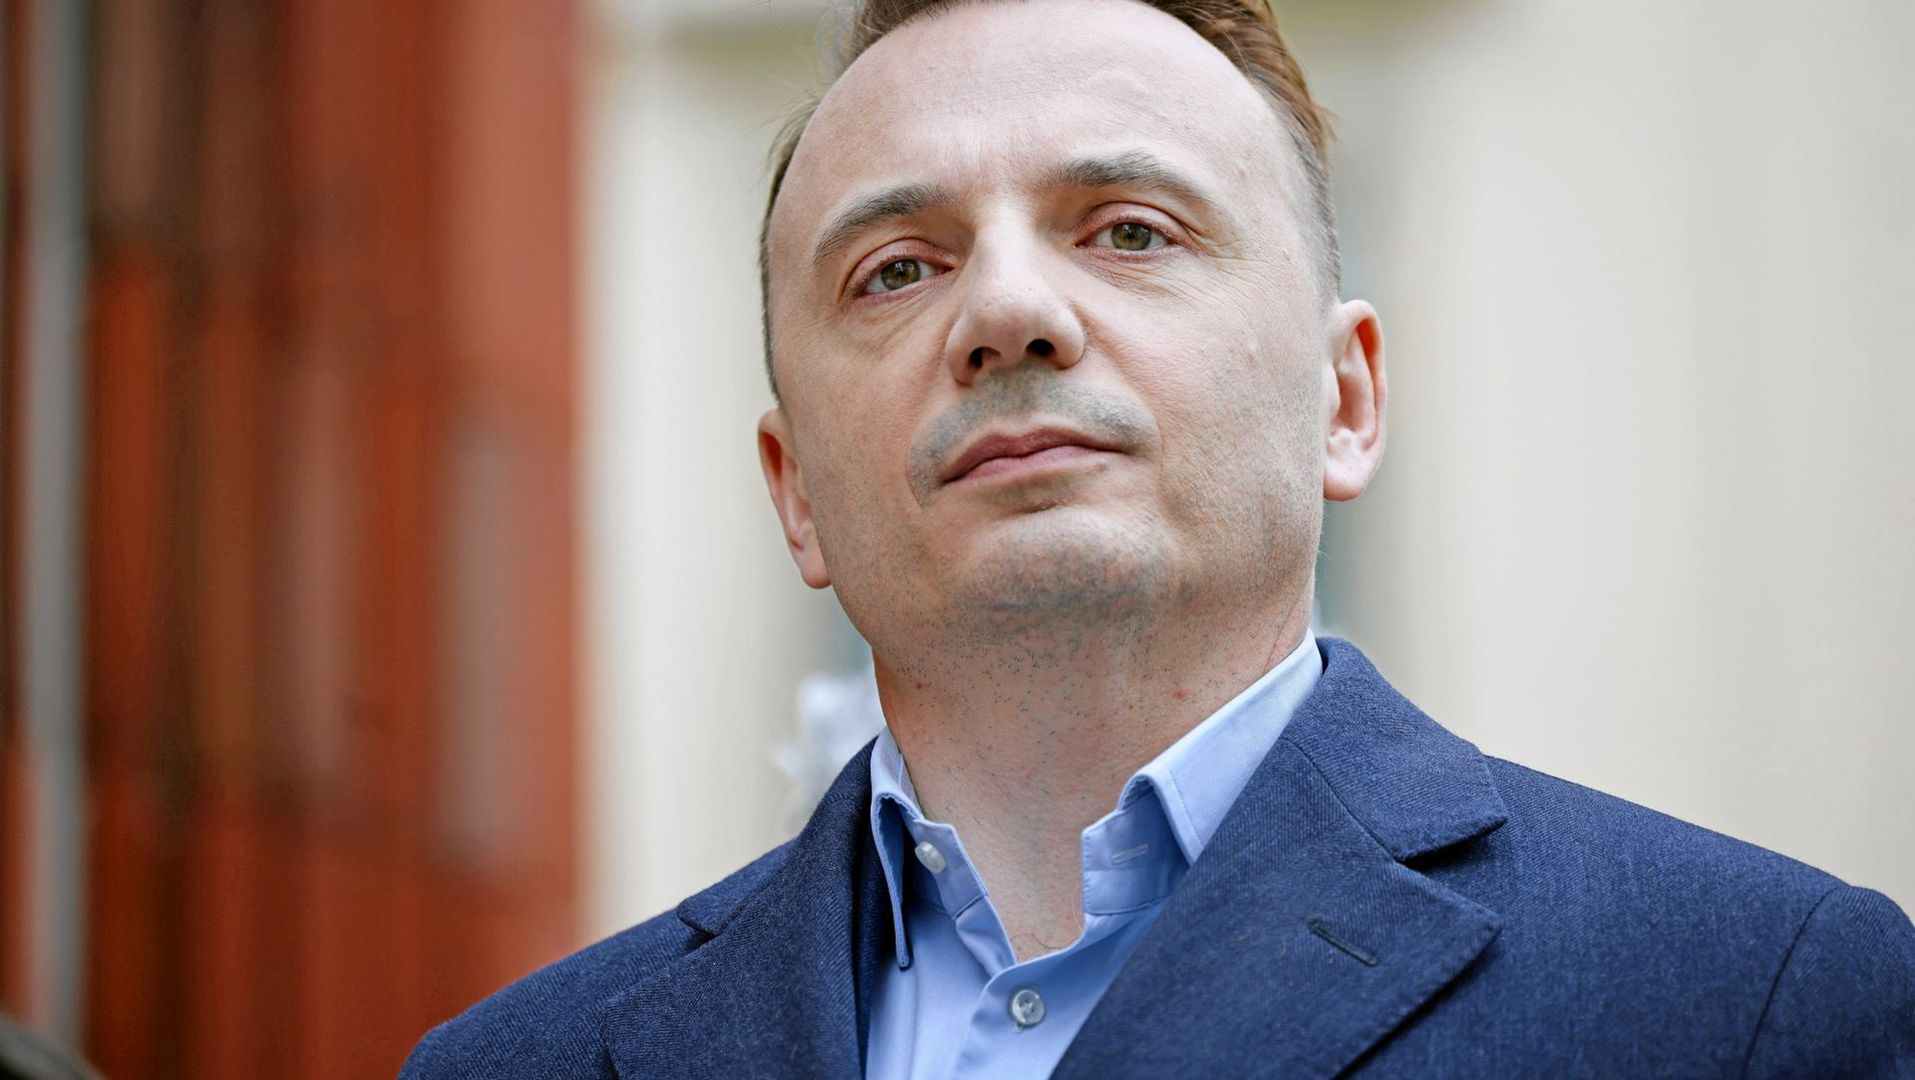 Łukasz Gibała: "Mam nadzieję, że jeśli wygram, to Aleksander Miszalski się nie obrazi i będzie wspierał moje działania jako poseł z Krakowa"